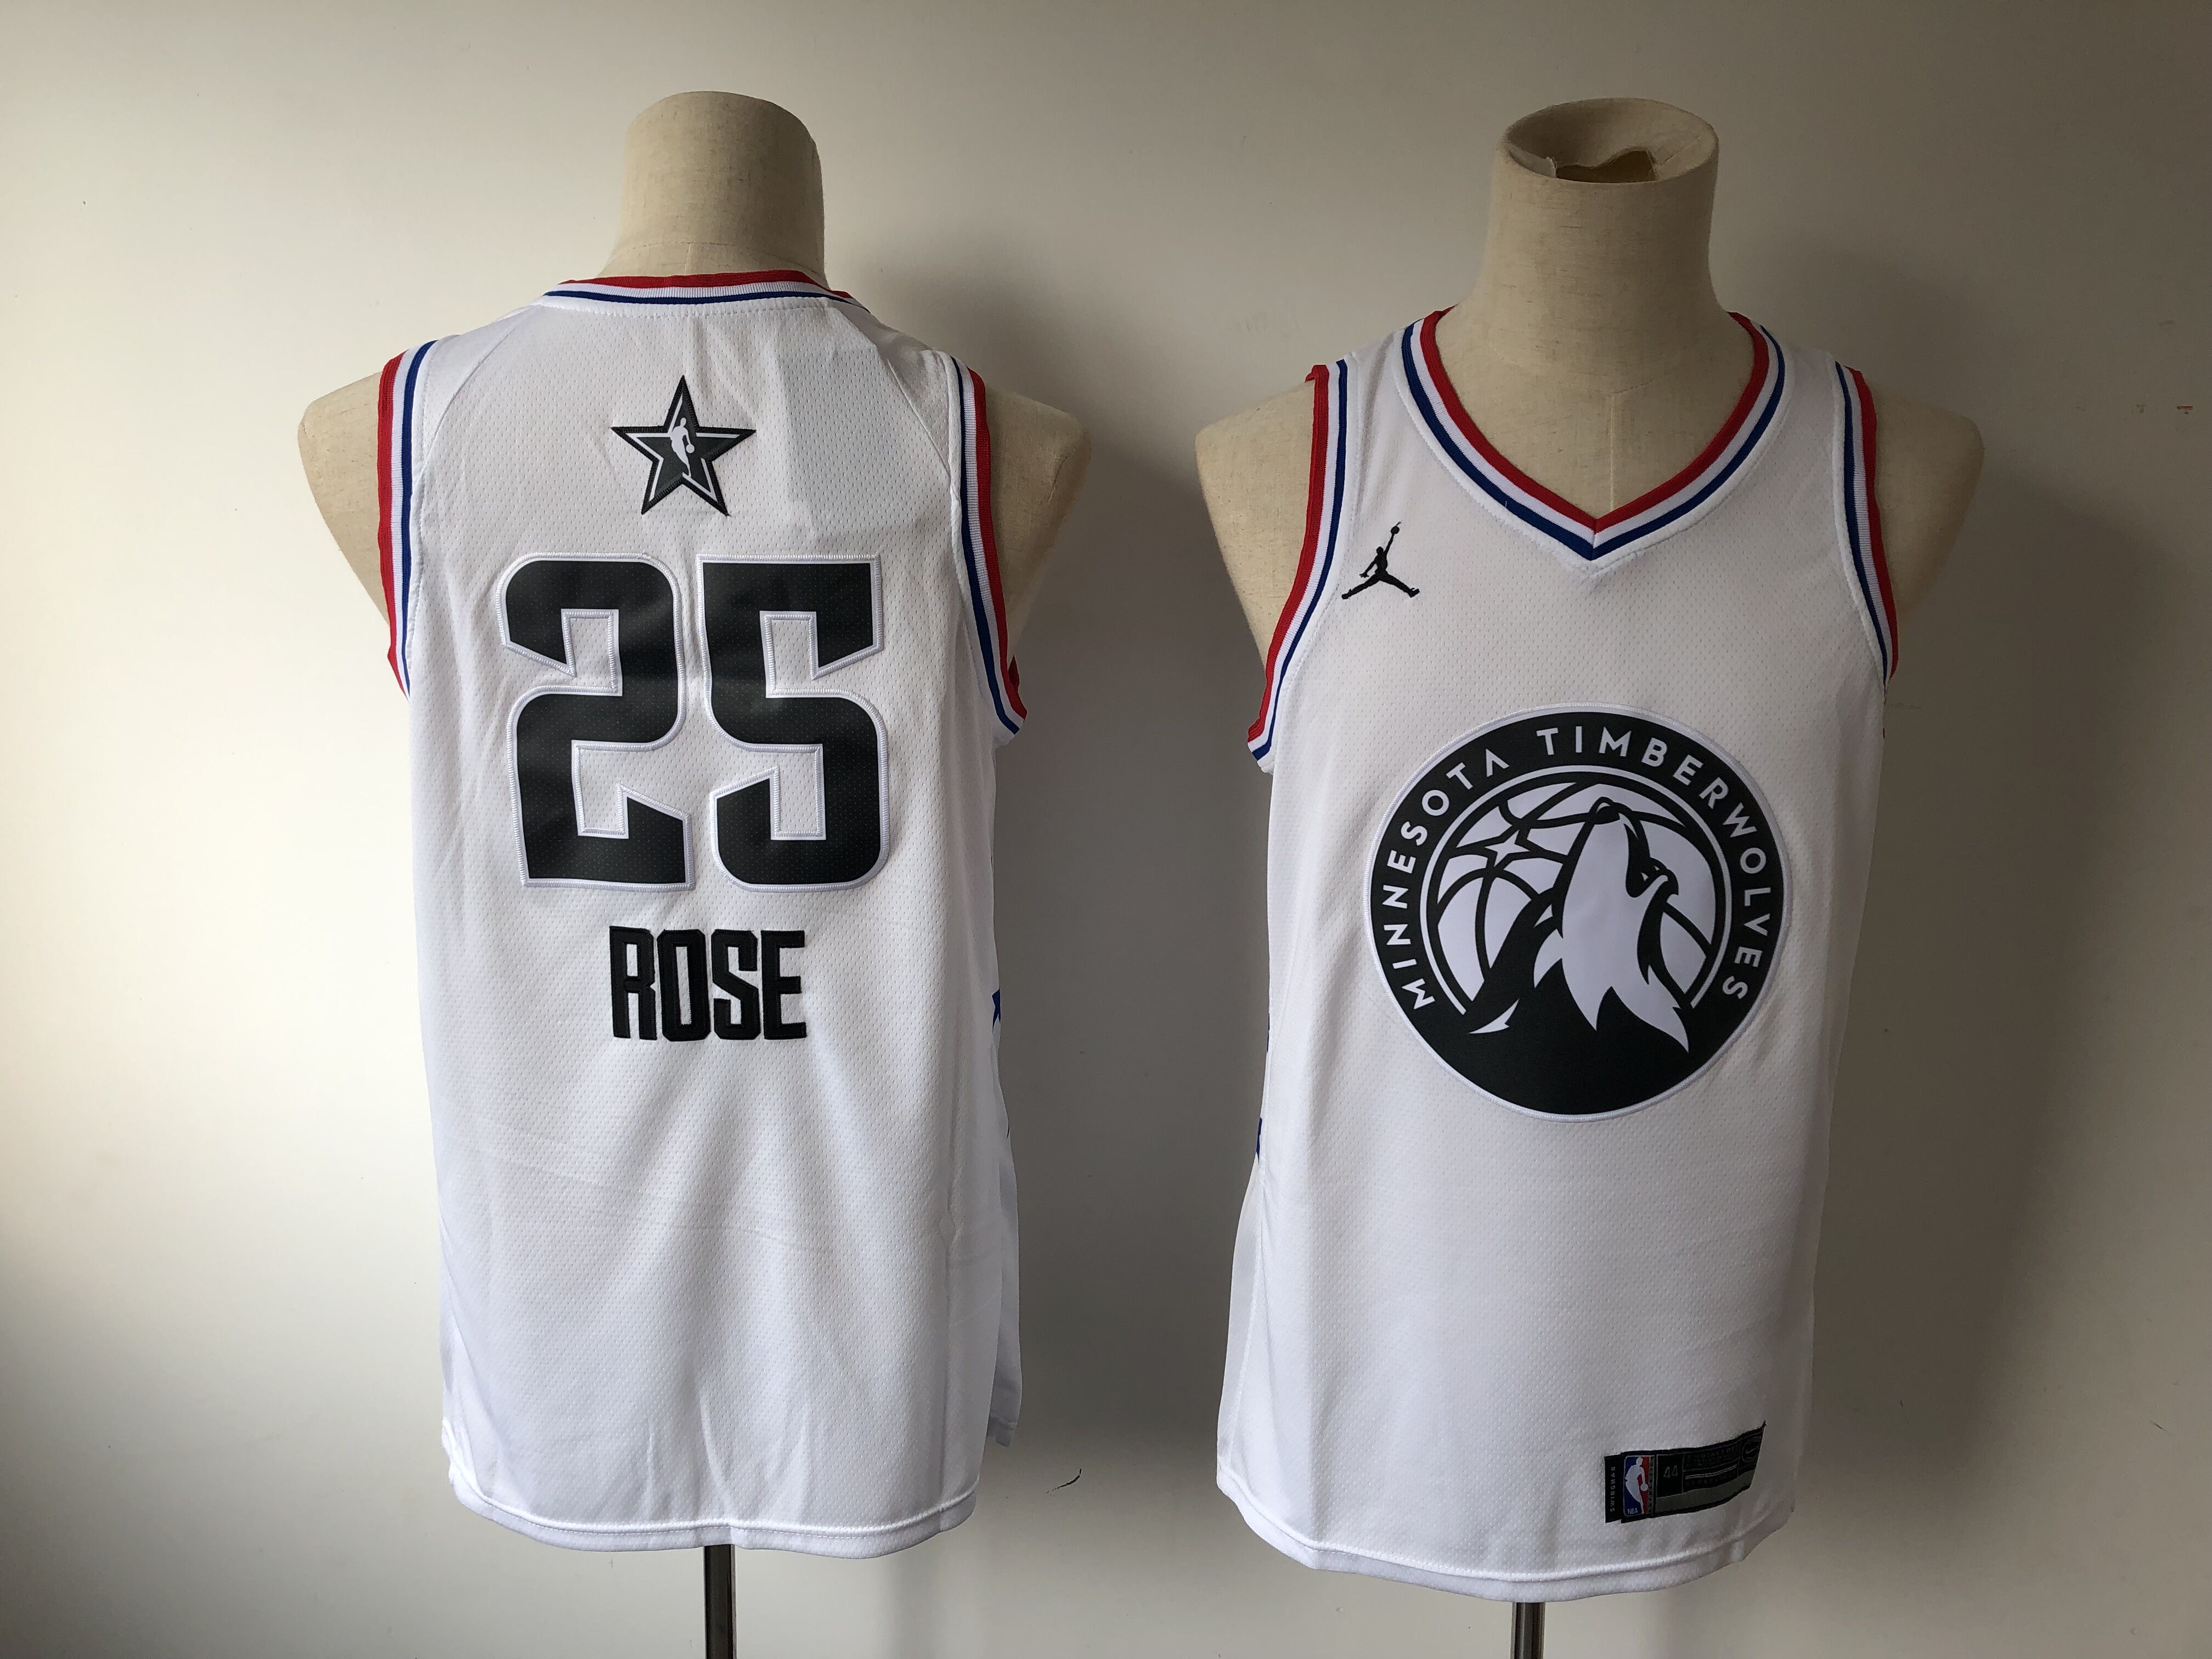 Men Minnesota Timberwolves #25 Rose White 2019 All Star NBA Jerseys->minnesota timberwolves->NBA Jersey